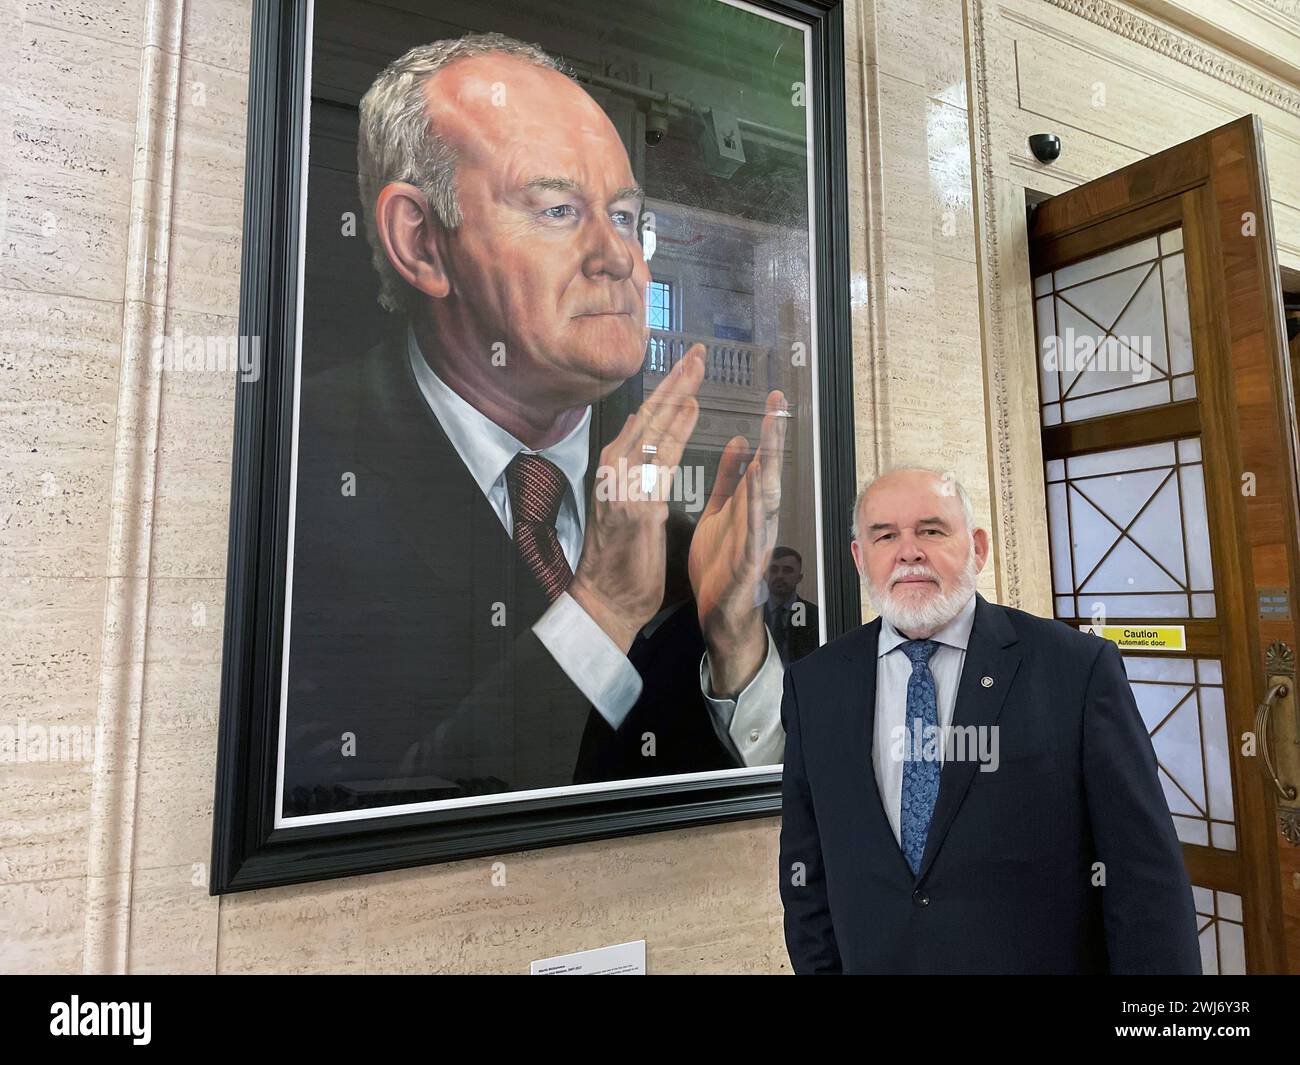 Le député Francie Molloy, à côté d'un portrait de Martin McGuinness dans le Great Hall of Parliament Buildings, Stormont, alors qu'il annonçait qu'il ne se présenterait pas à une réélection dans la circonscription de Mid Ulster lors des prochaines élections générales britanniques. Date de la photo : mardi 13 février 2024. Banque D'Images